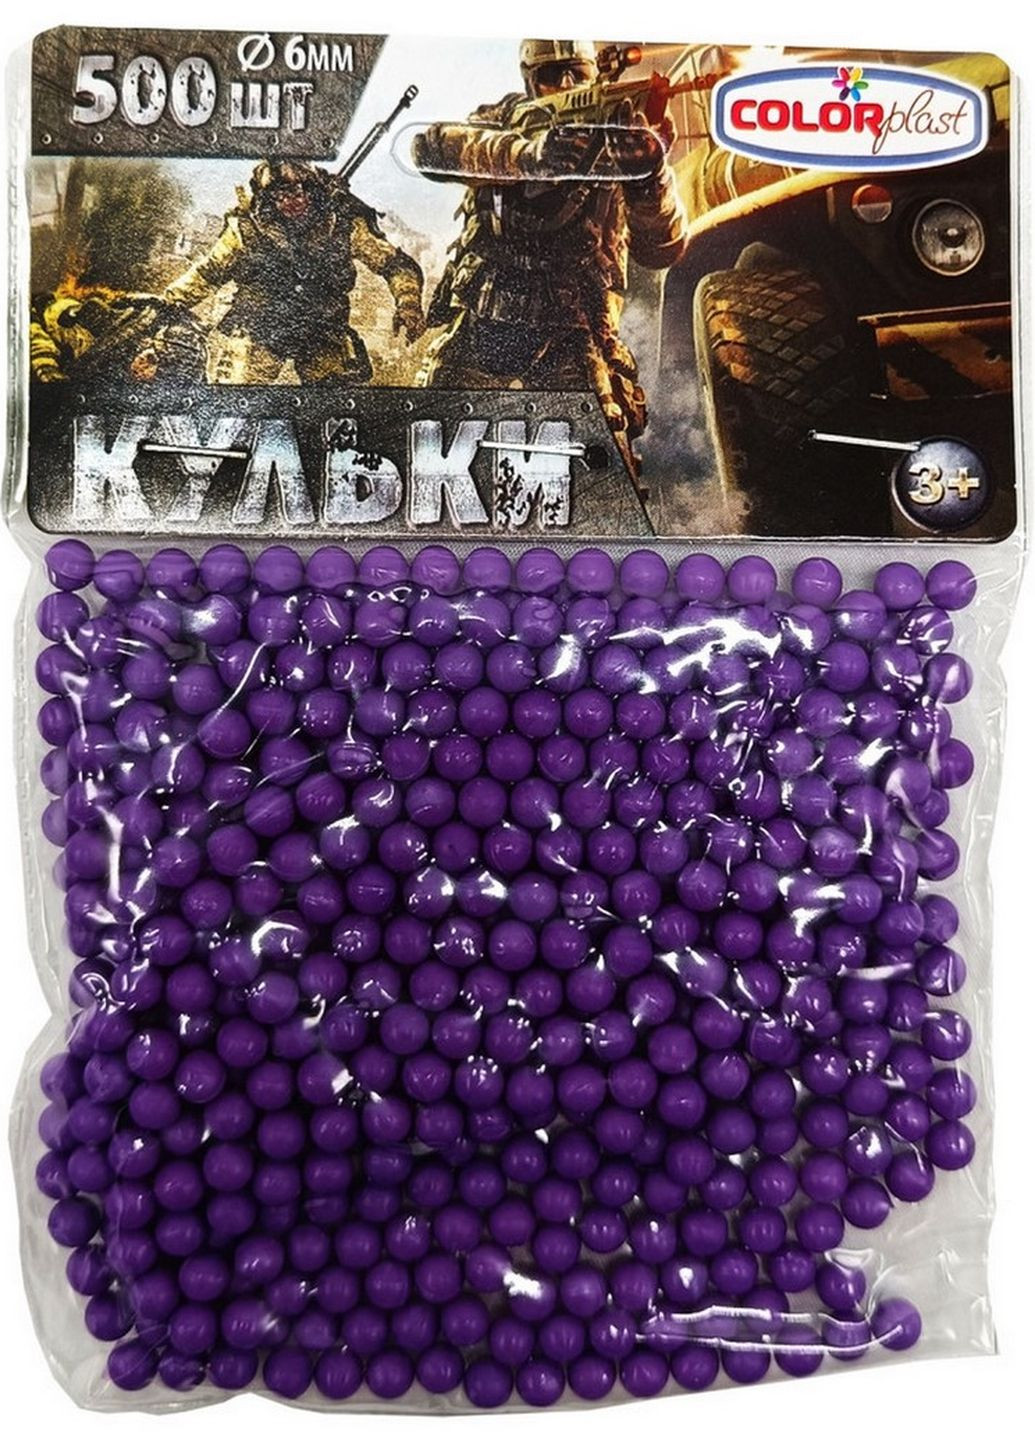 Пластиковые пульки (шарики) для детского оружия 1-153, 6 мм 500 шт Фиолетовый Colorplast (276461870)